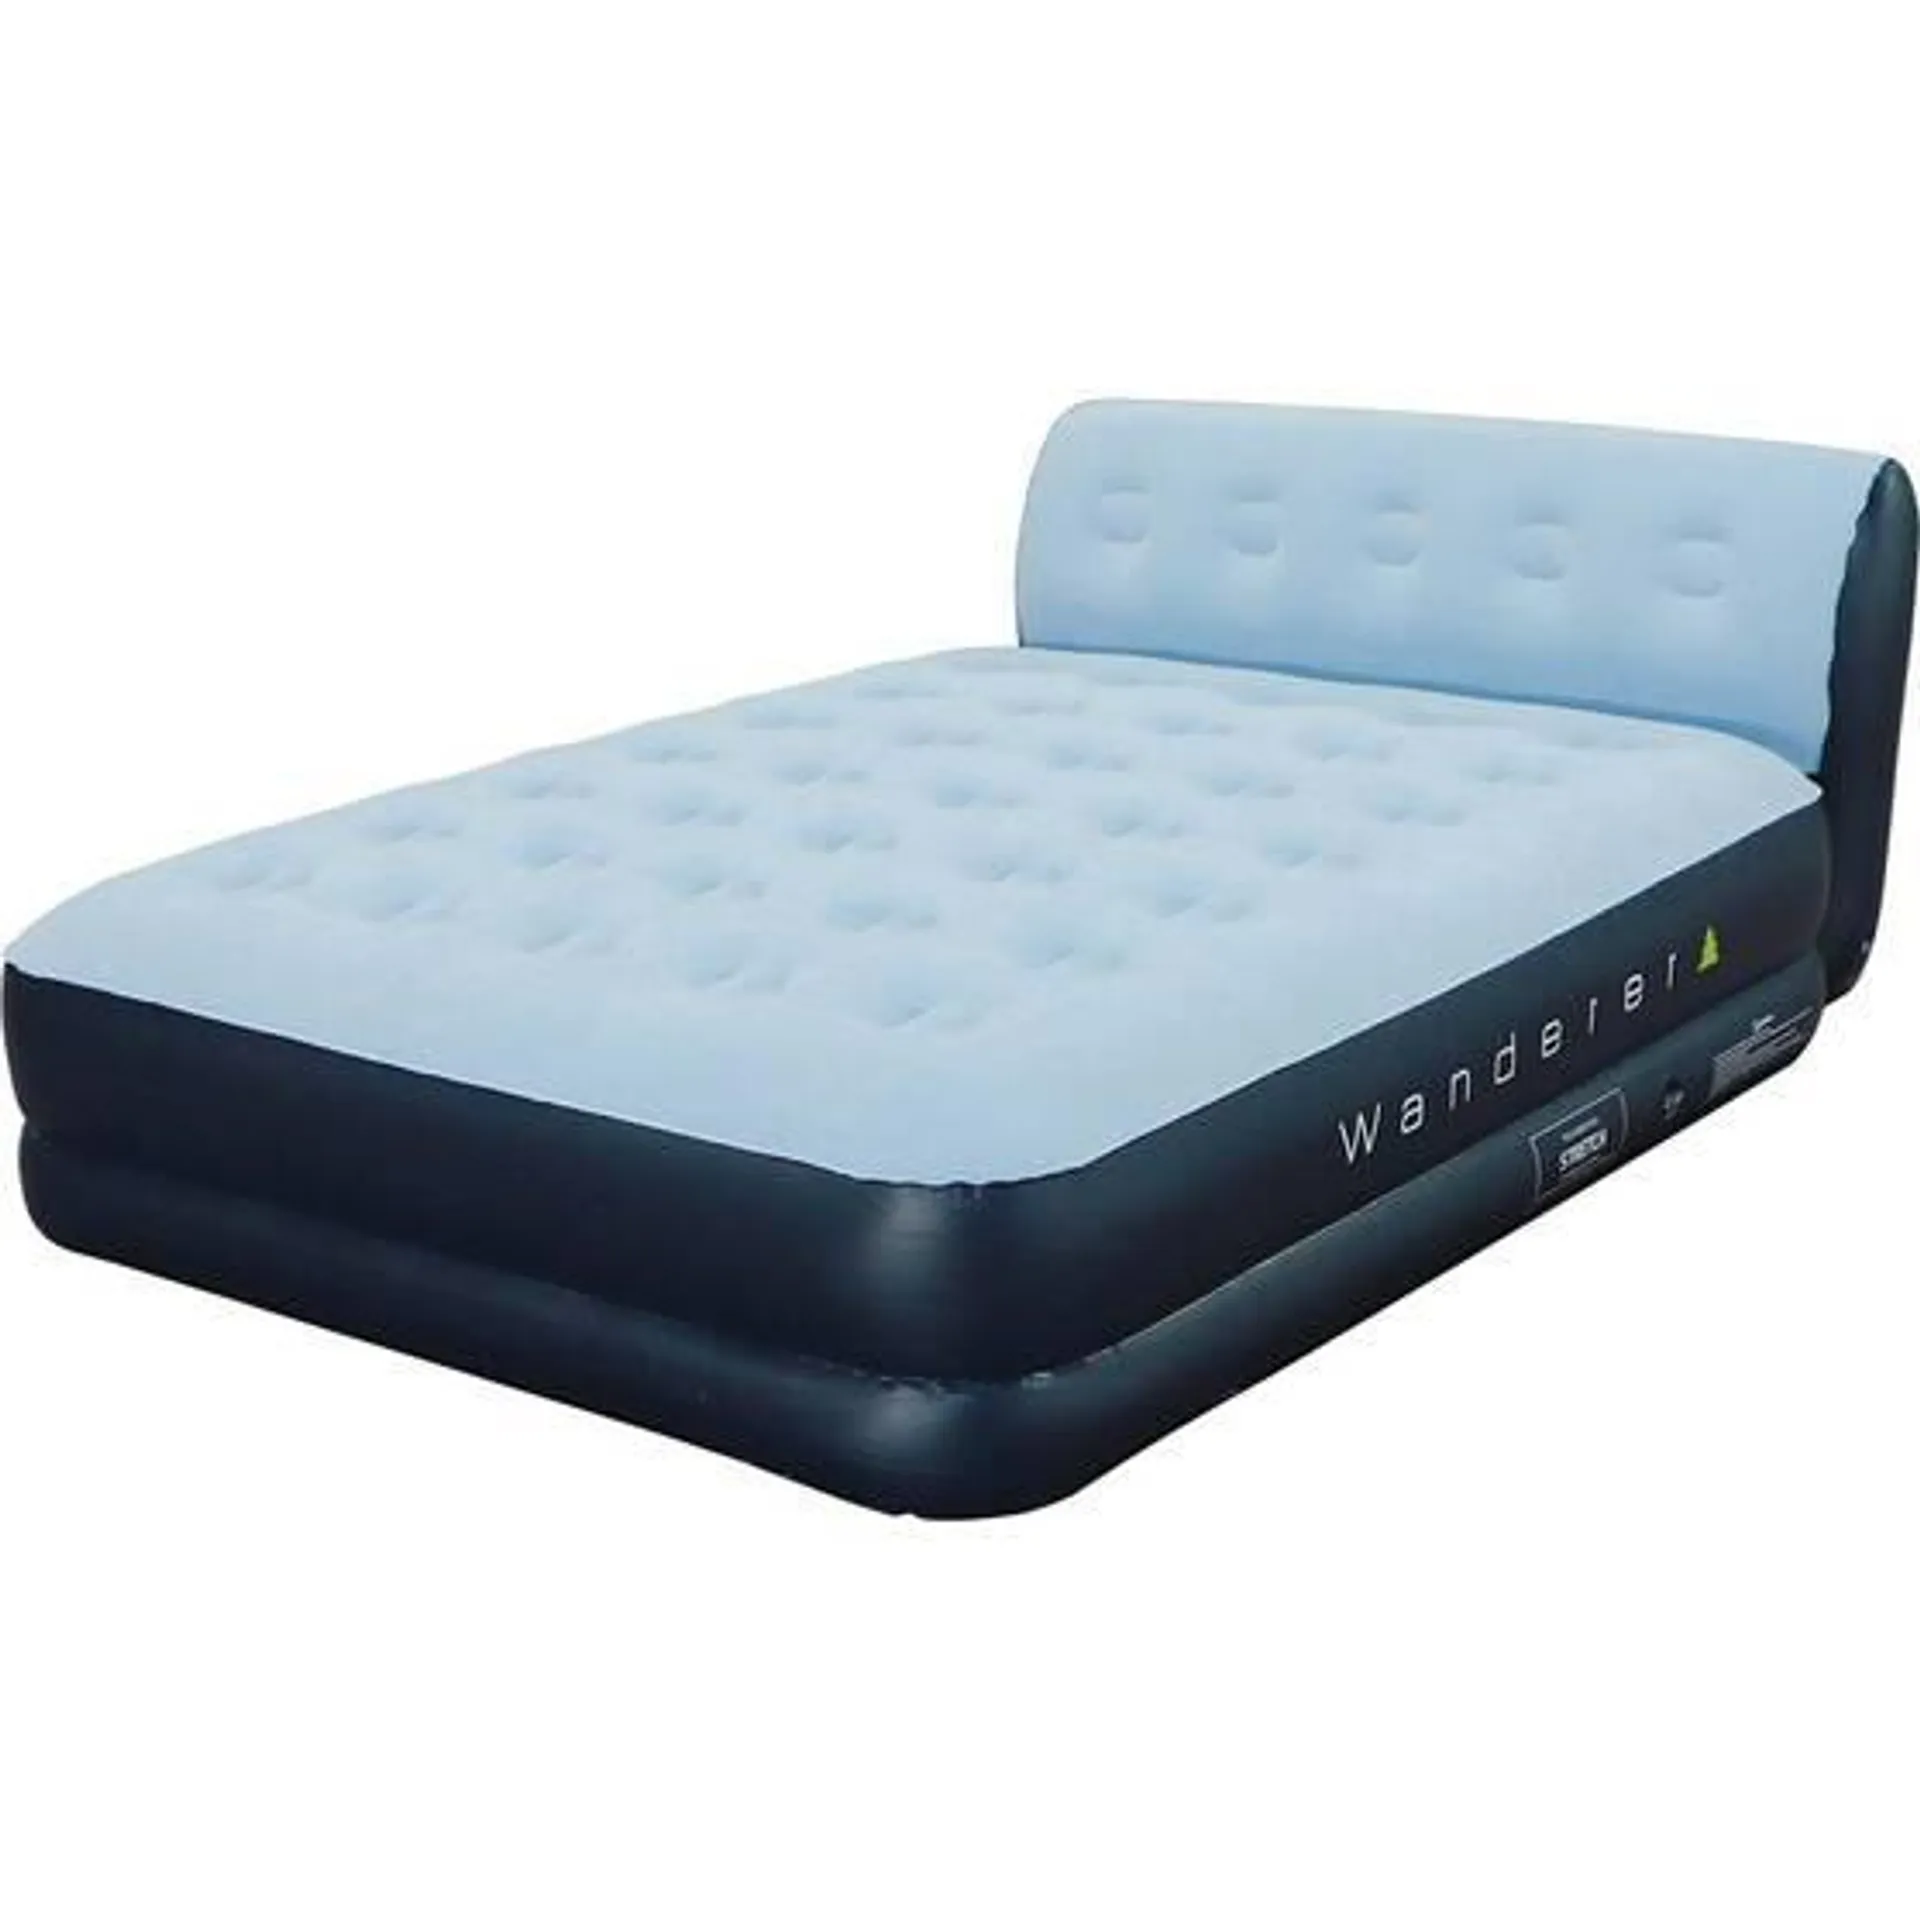 Wanderer Premium Comfort Rest Double High Queen Air Bed